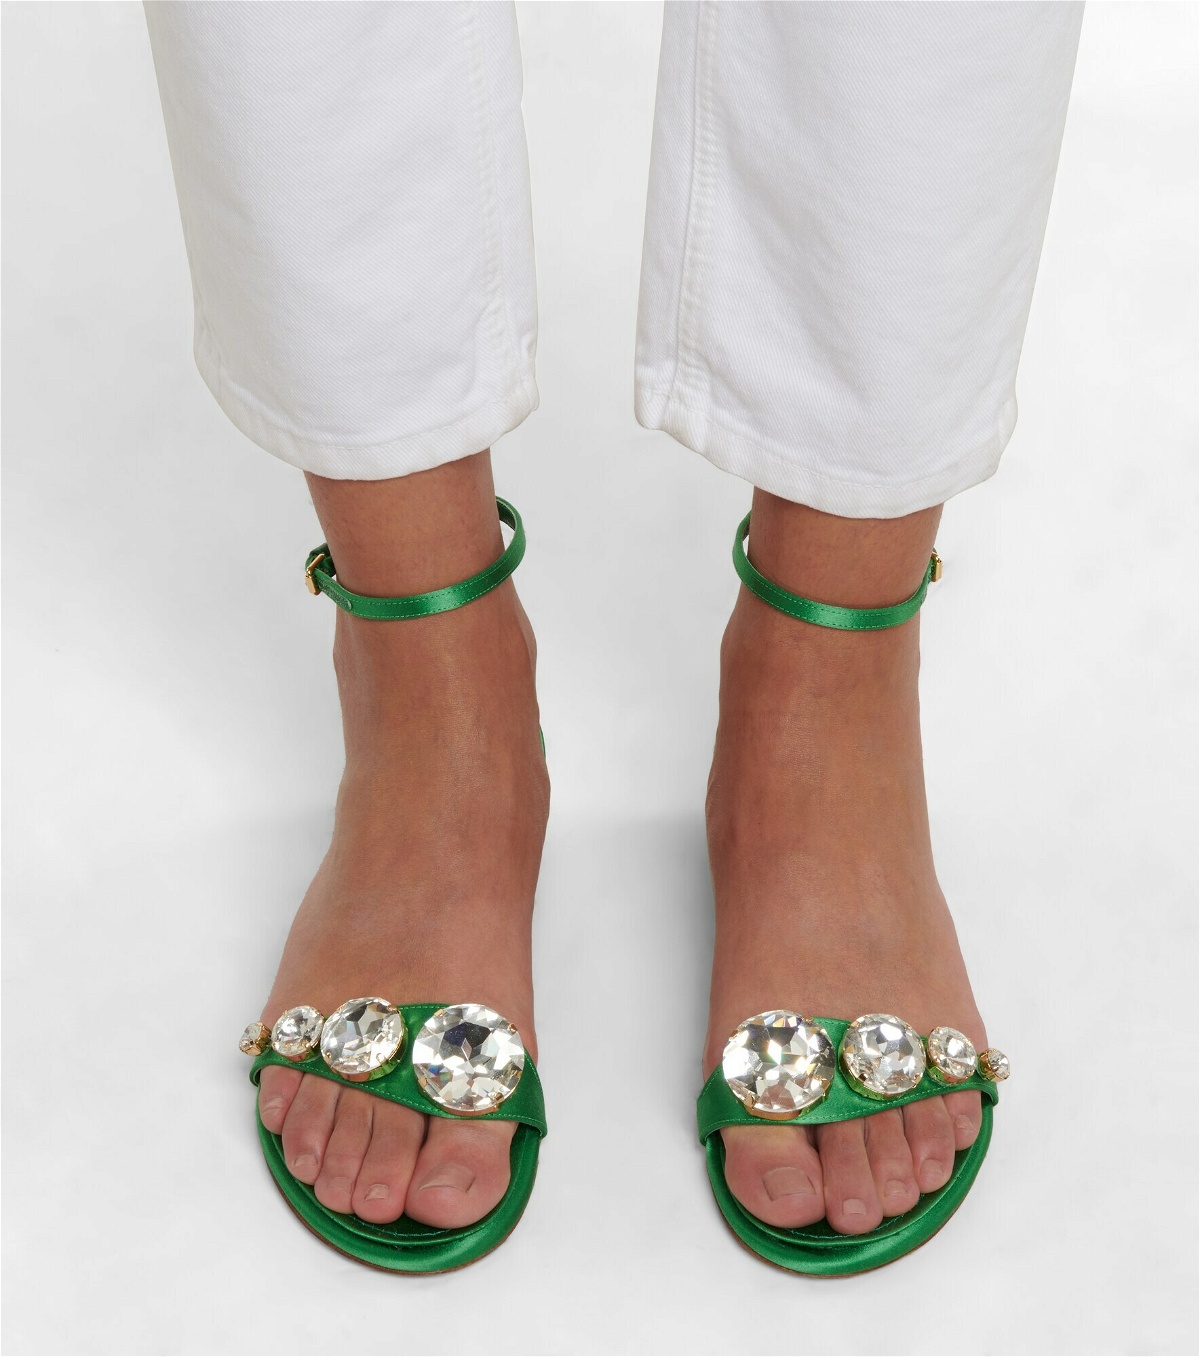 Giambattista Valli - Embellished satin sandals Giambattista Valli